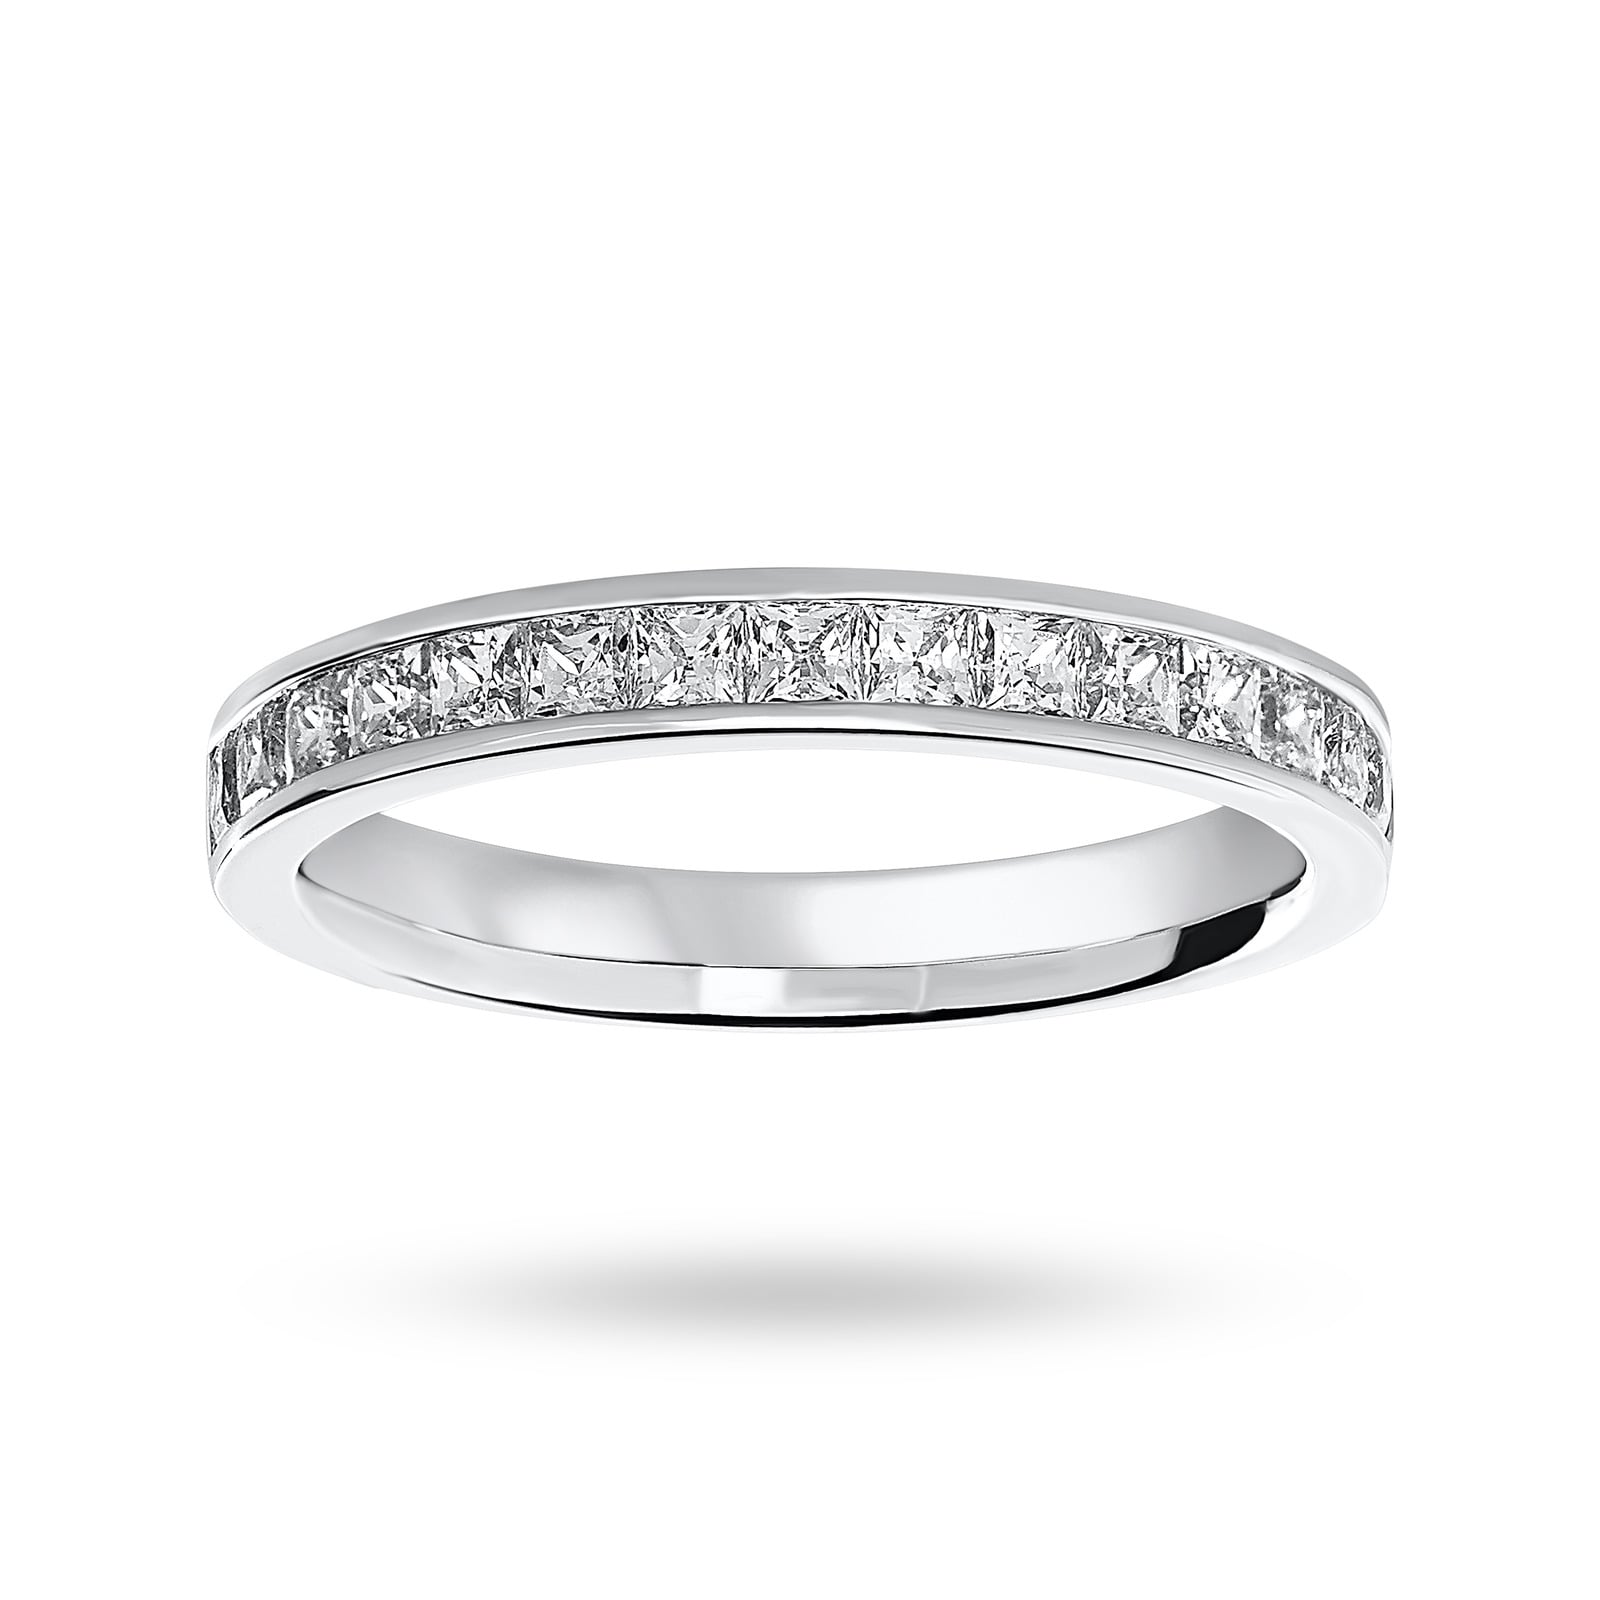 18 Carat White Gold 0.75 Carat Princess Cut Half Eternity Ring - Ring Size M